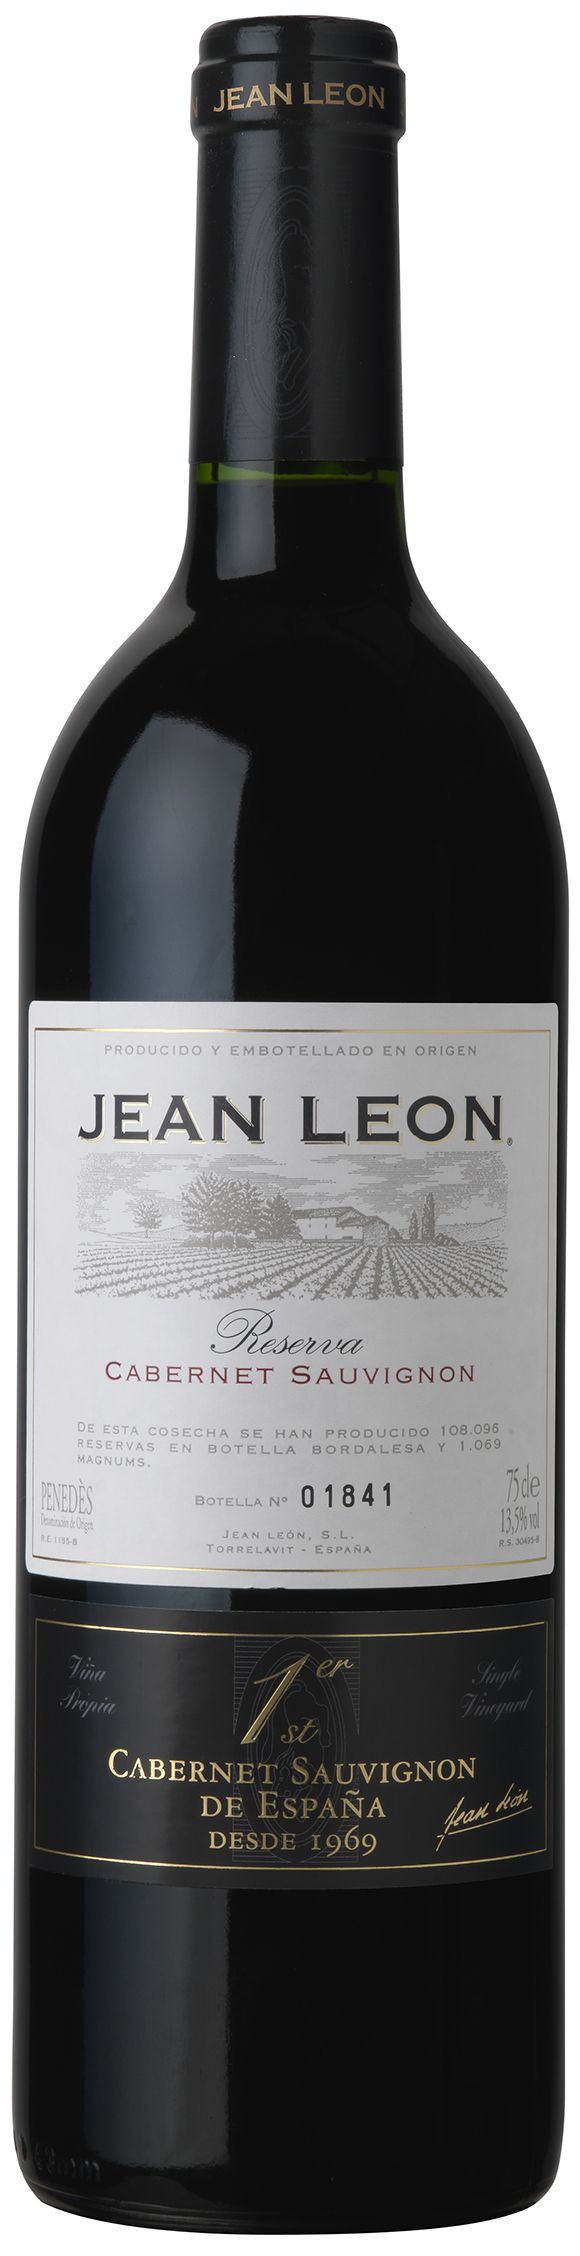 Jean Leon, Cabernet Sauvignon Reserva, 2002